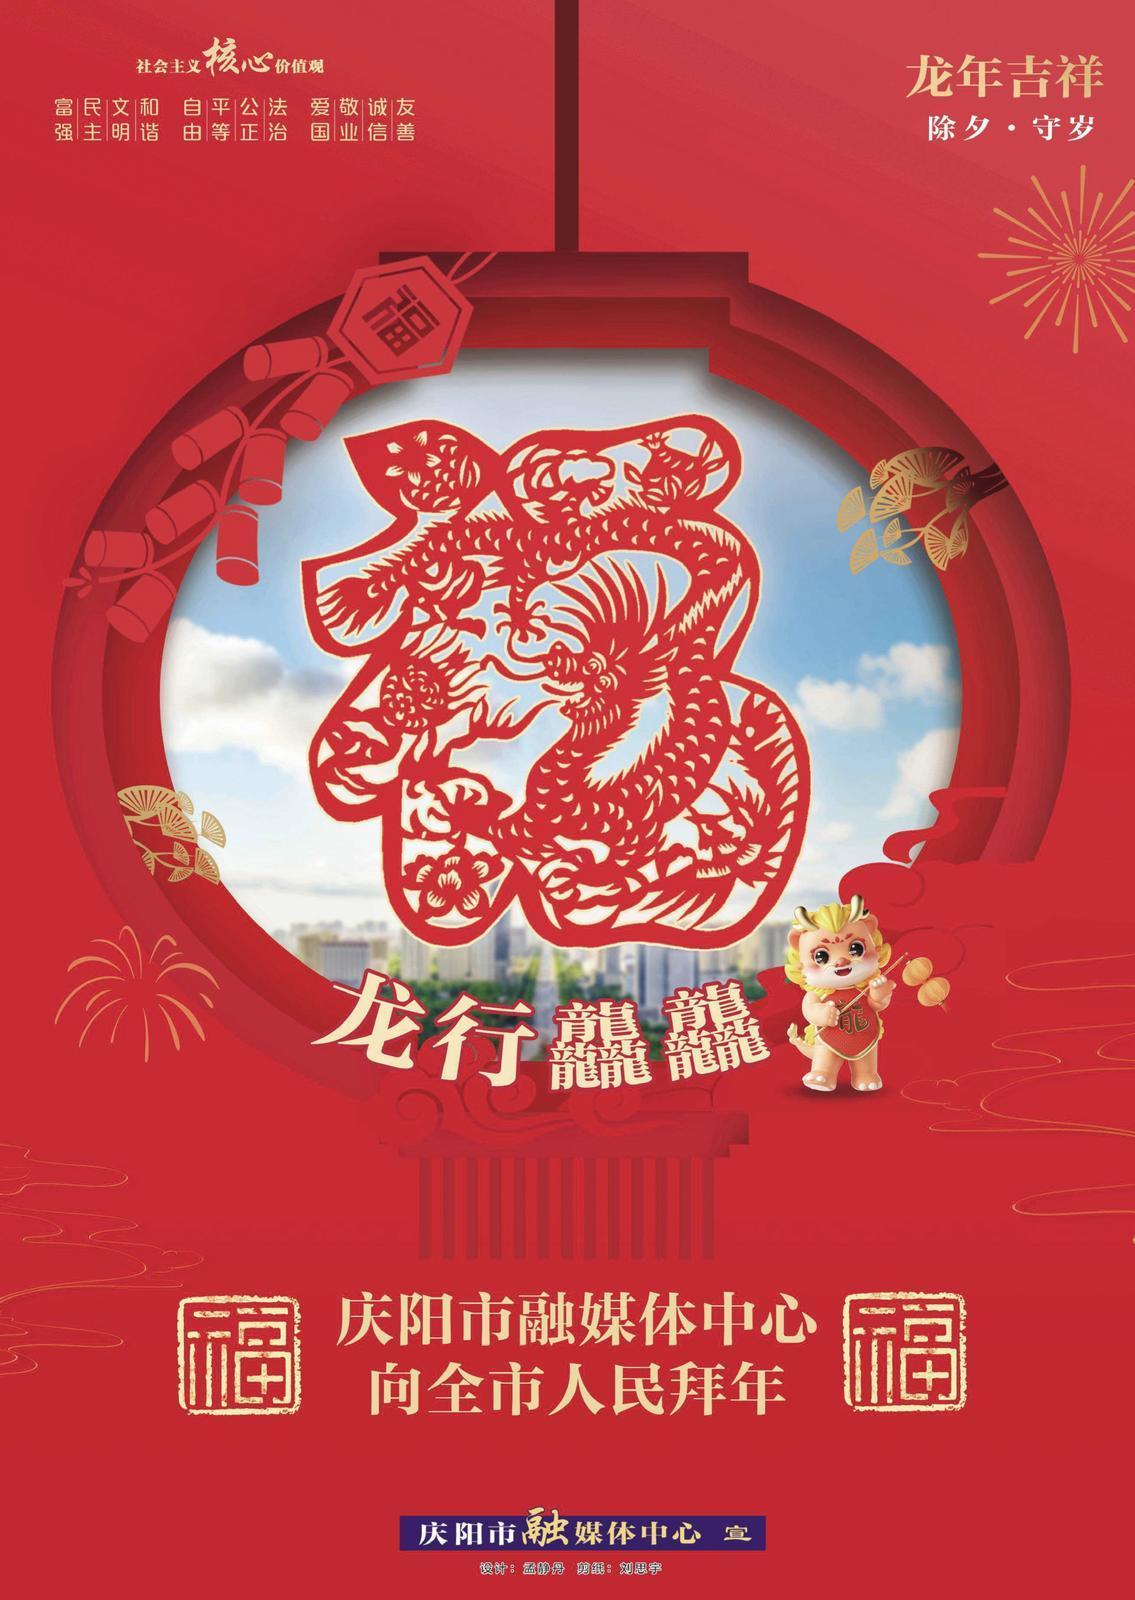 【网络中国节·春节】庆阳市融媒体中心向全市人民拜年啦！